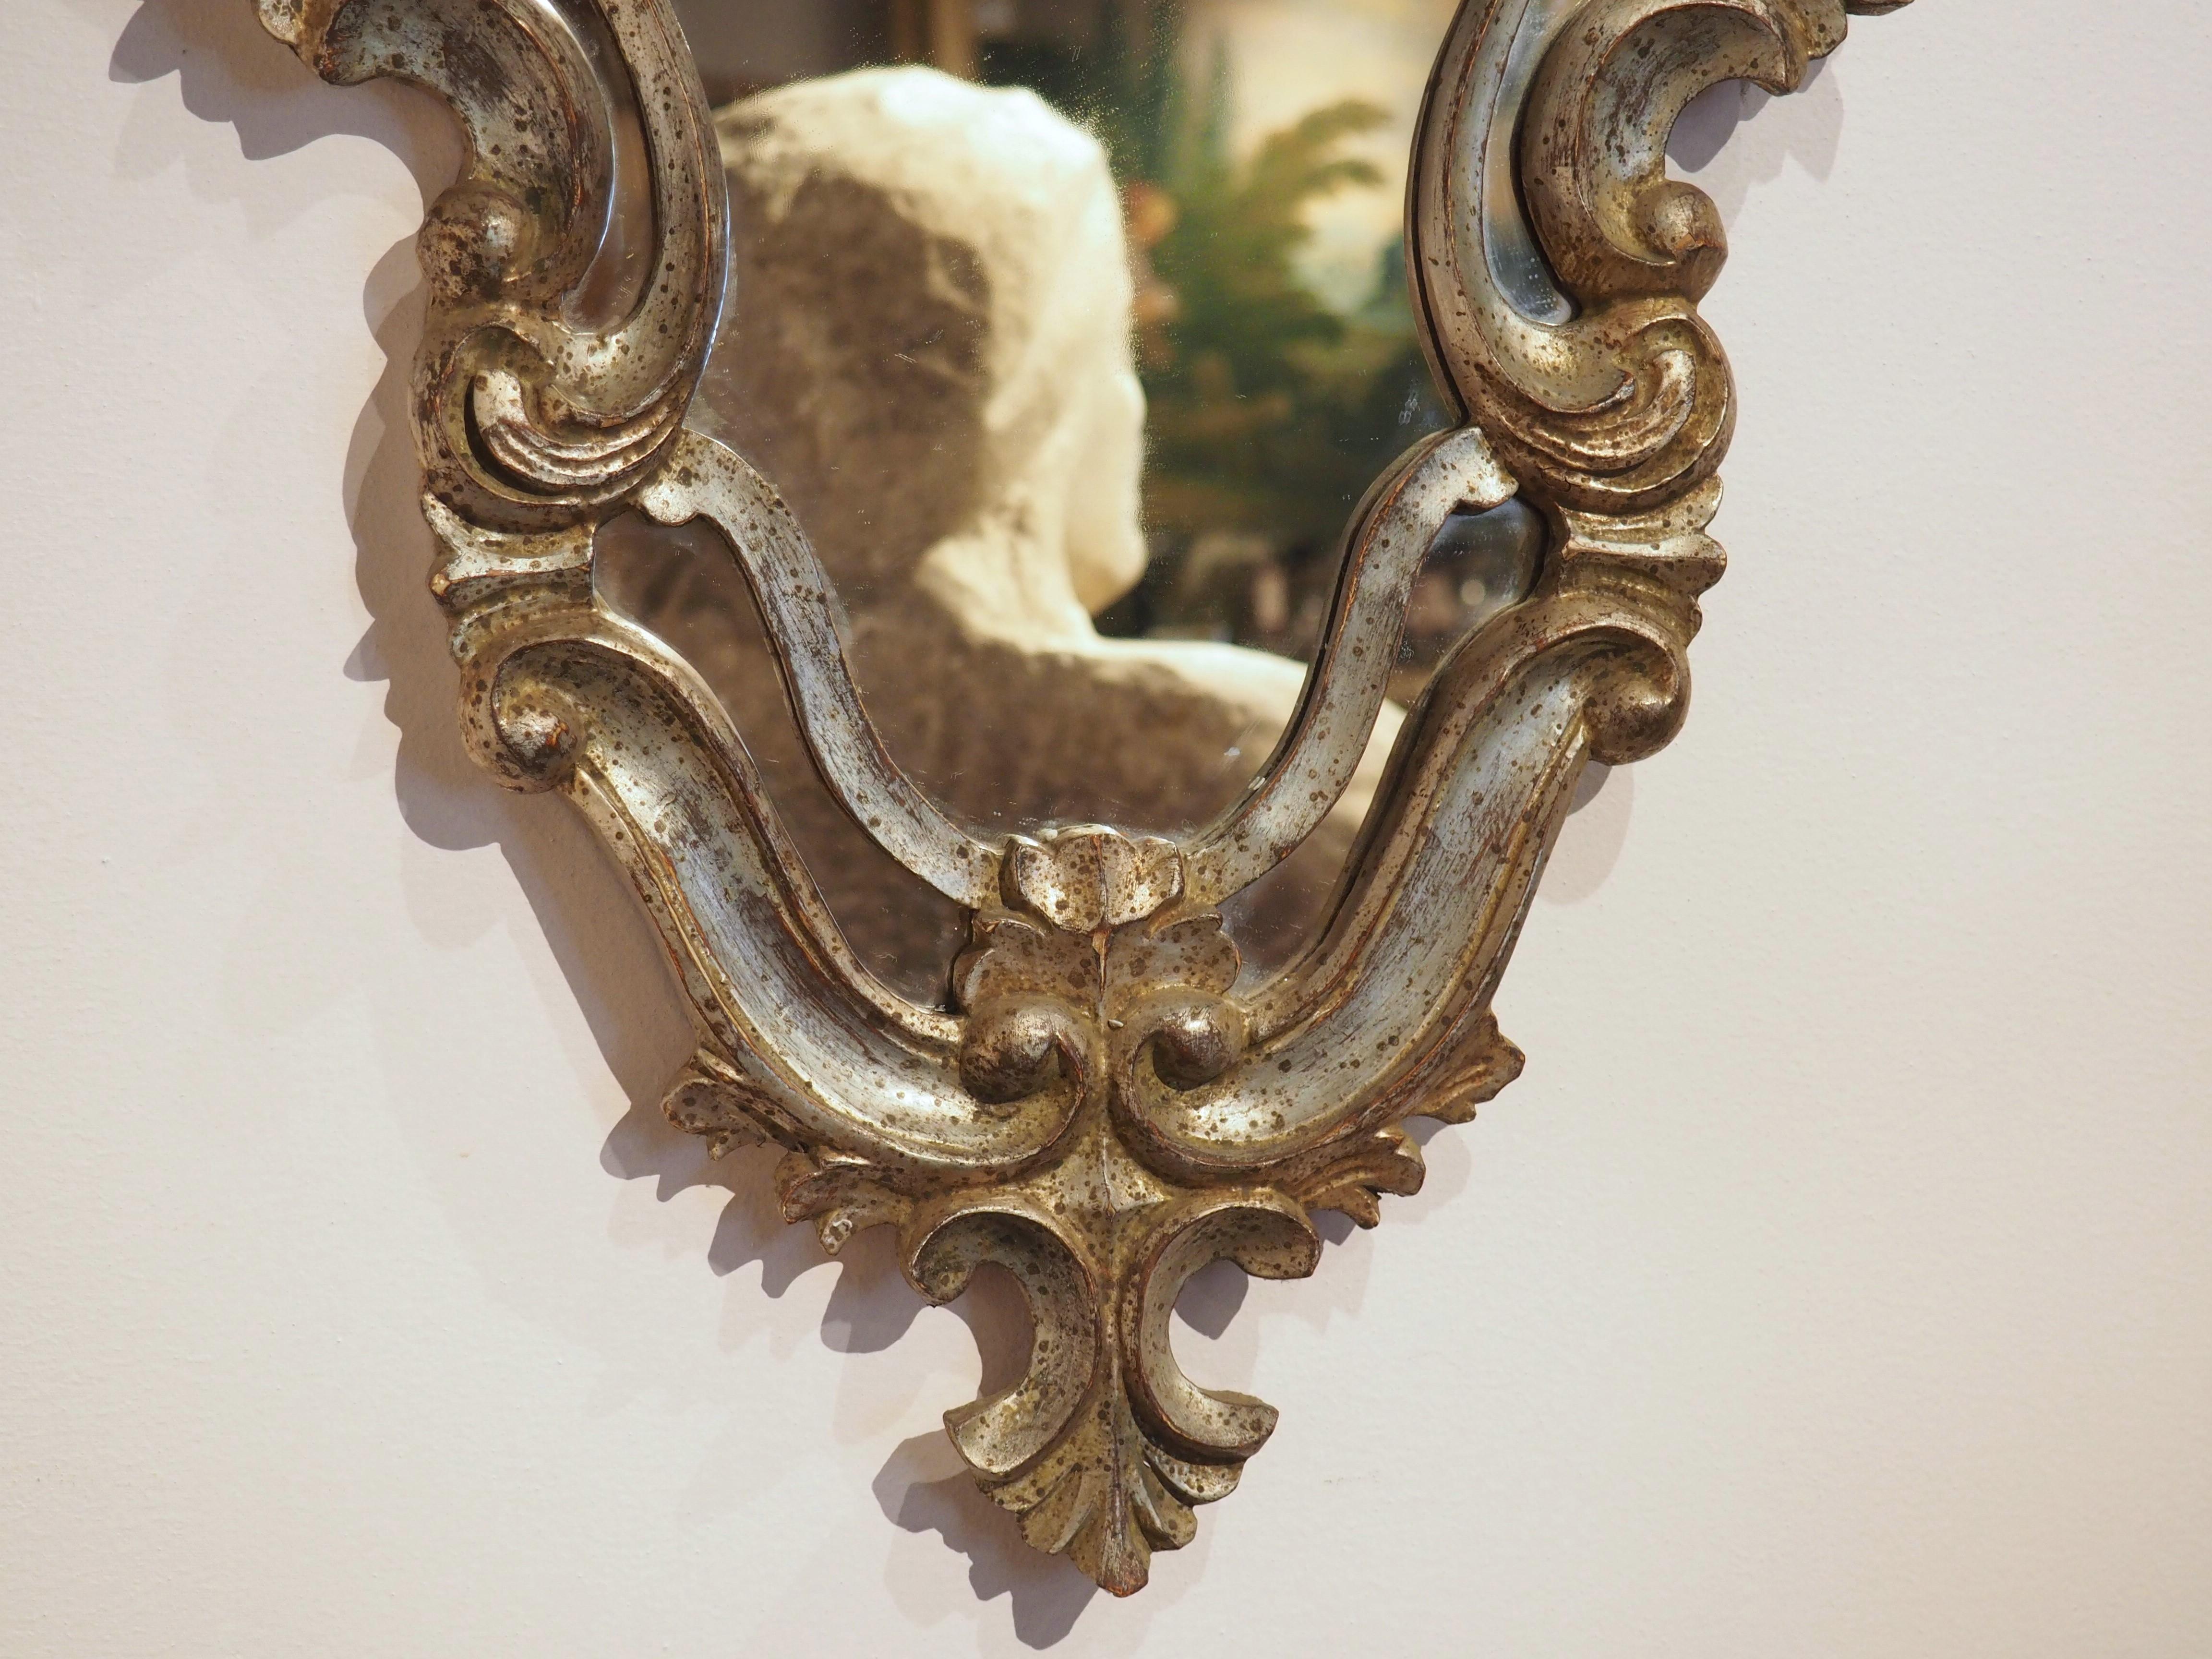 Verleihen Sie Ihrem Zuhause einen Hauch von zeitloser Eleganz mit diesem wunderschönen antiken Spiegel aus Italien. Dieser 32 Zoll hohe Spiegel aus vergoldetem Holz im venezianischen Stil stammt aus den 1920er Jahren und hat eine silberne und